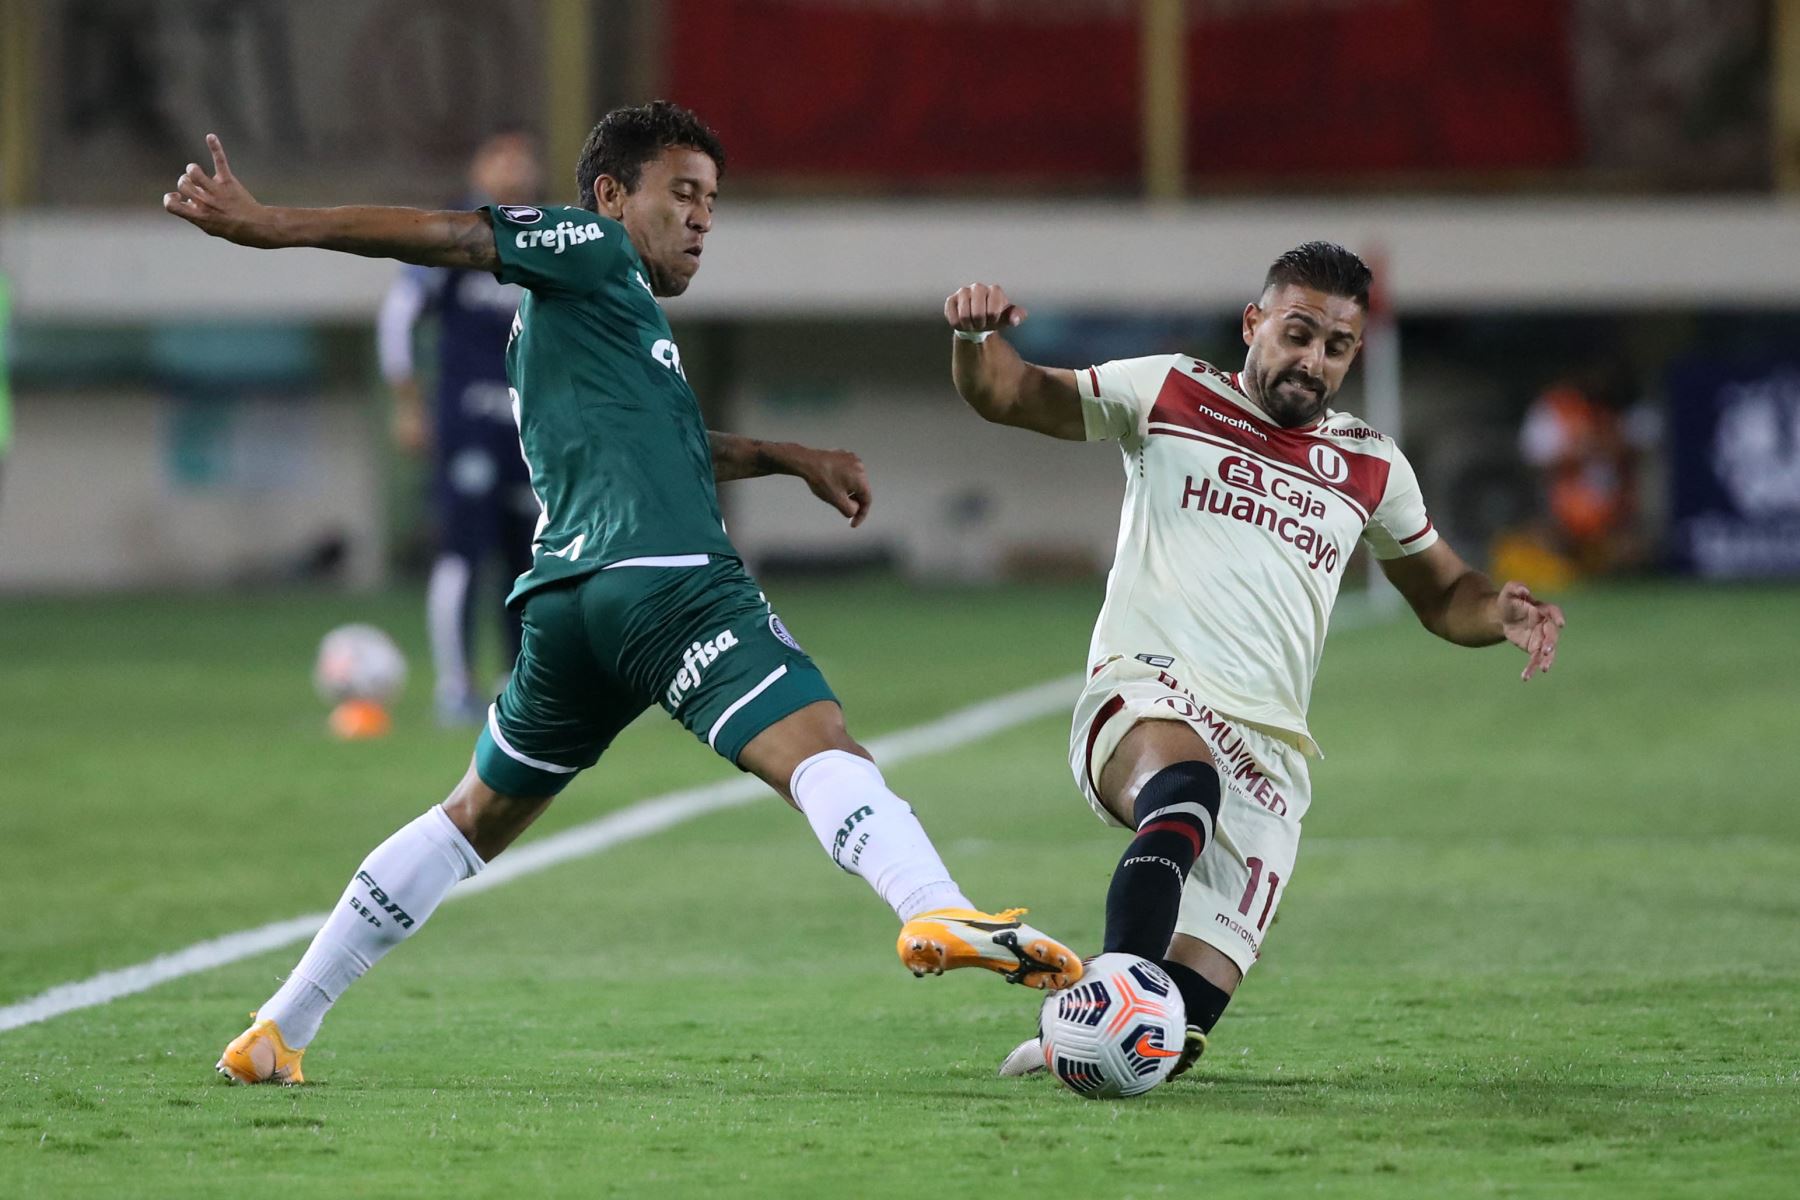 El brasileño  Marcos Rocha de Palmeiras y el peruano Luis Urruti de  Universitario  compiten por el balón durante el partido de la fase de grupos de la Copa Libertadores en el Estadio Monumental en Ate.
Foto: AFP